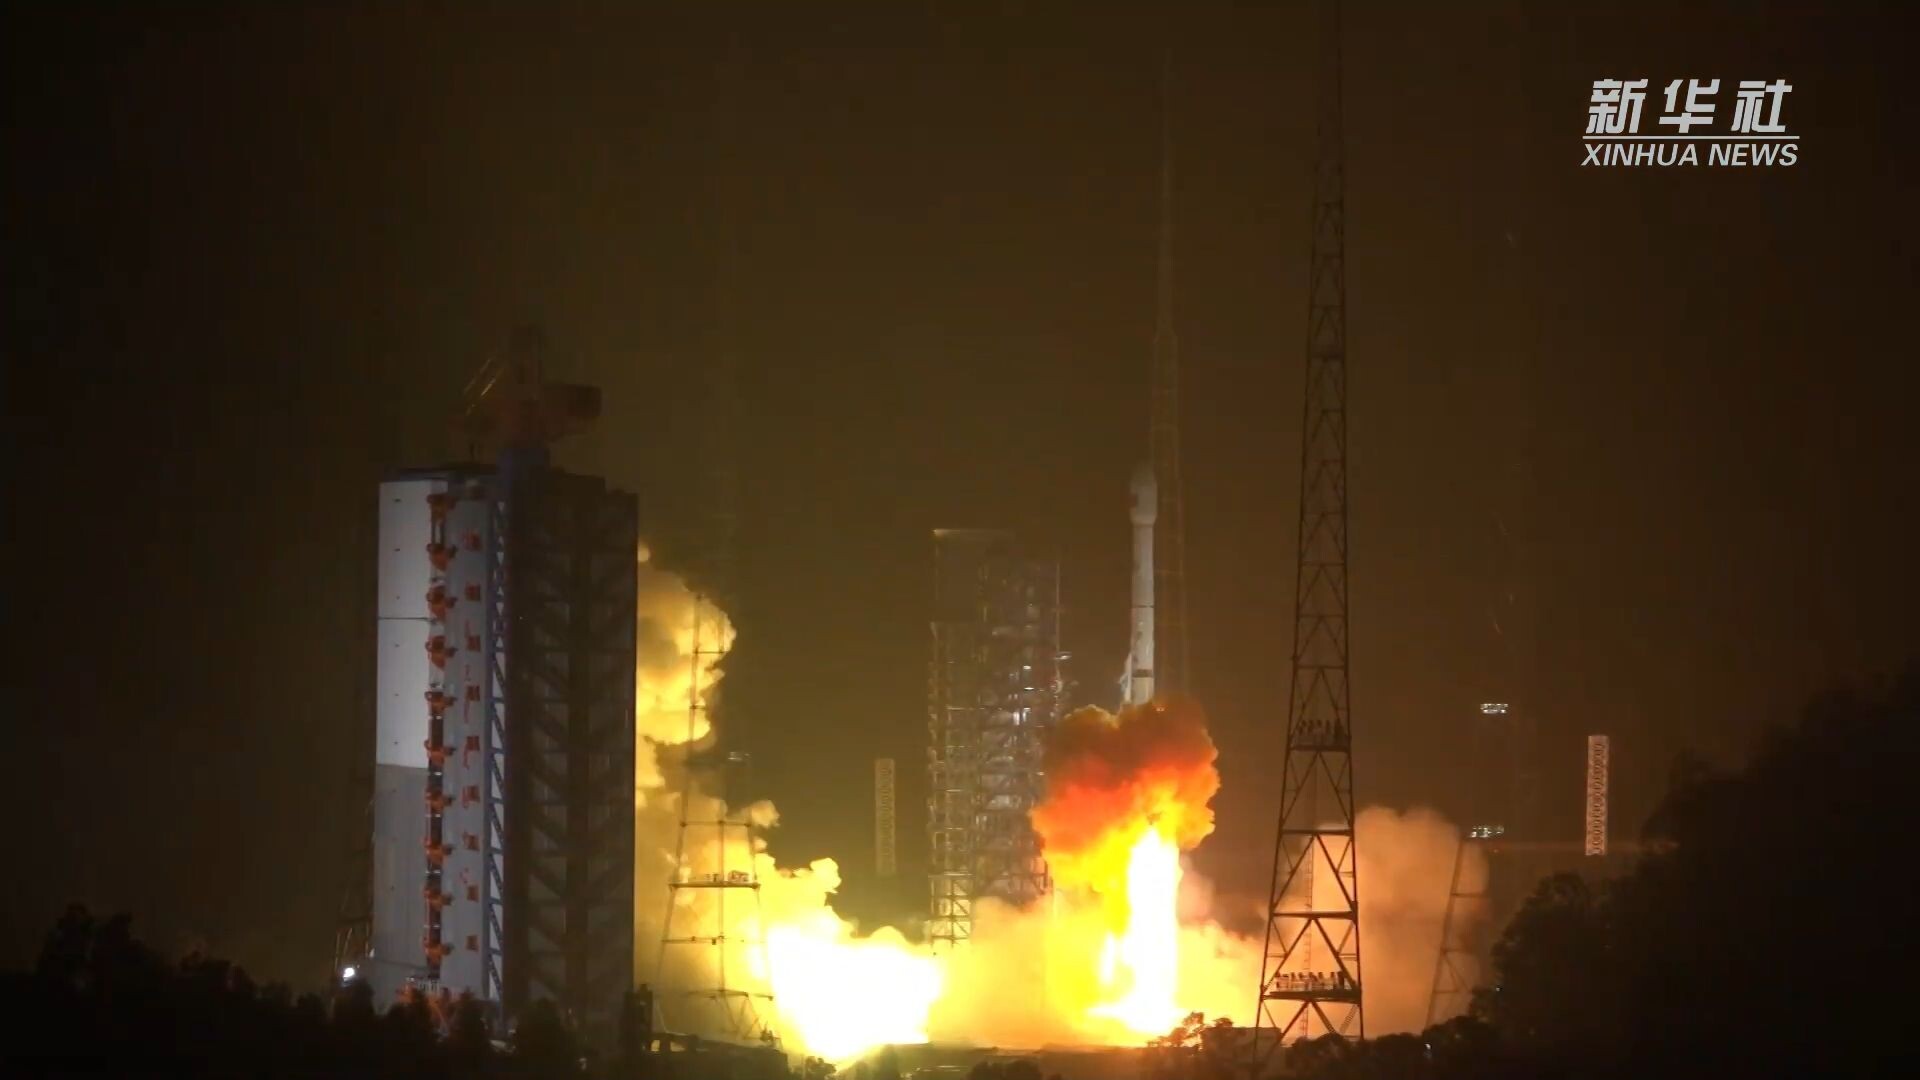 จรวด 'ลองมาร์ช-3บี' ของจีน พาดาวเทียมดวงใหม่สู่อวกาศ